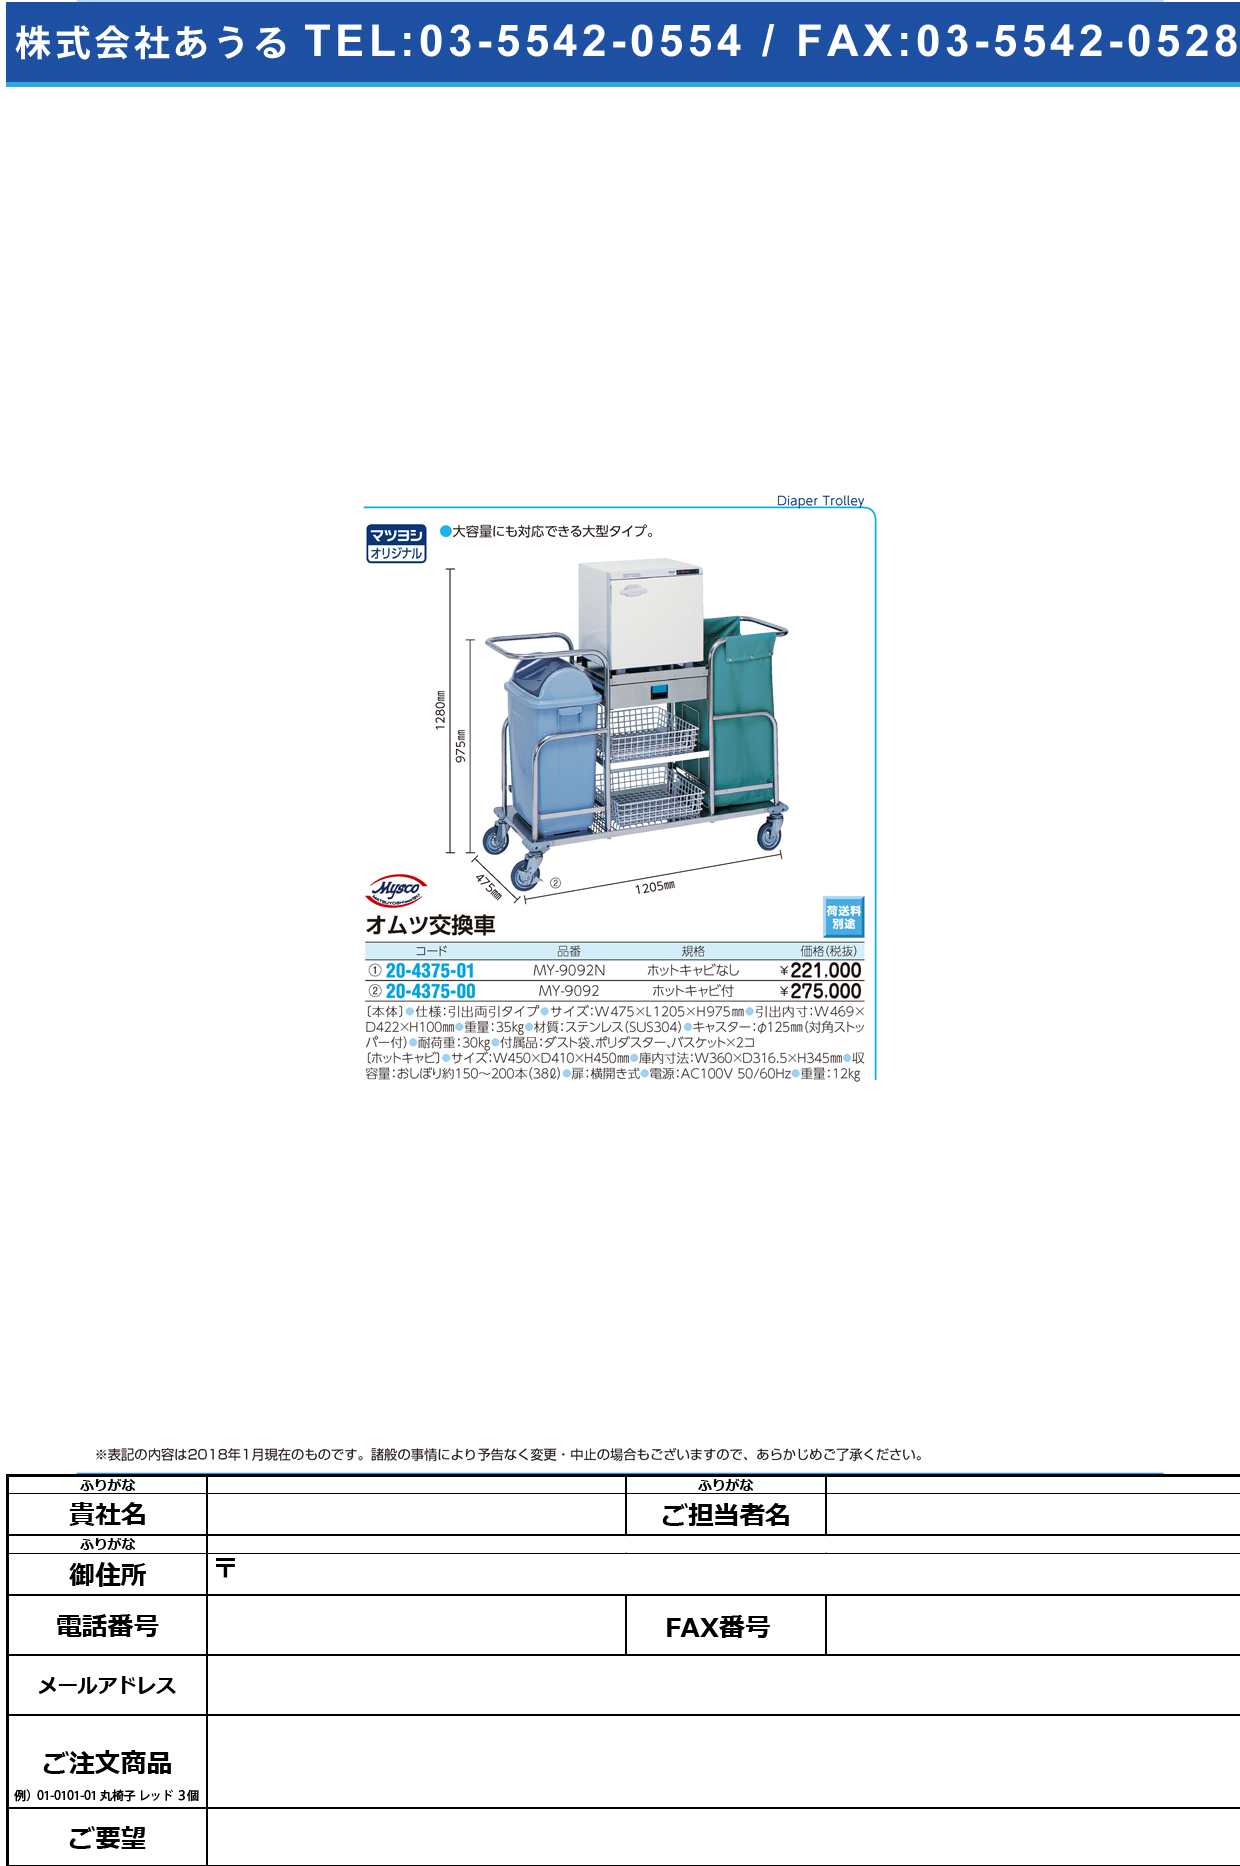 (20-4375-01)オムツ交換車 MY-9092N(ﾎｯﾄｷｬﾋﾞﾅｼ) ｵﾑﾂｺｳｶﾝｼｬ【1台単位】【2019年カタログ商品】